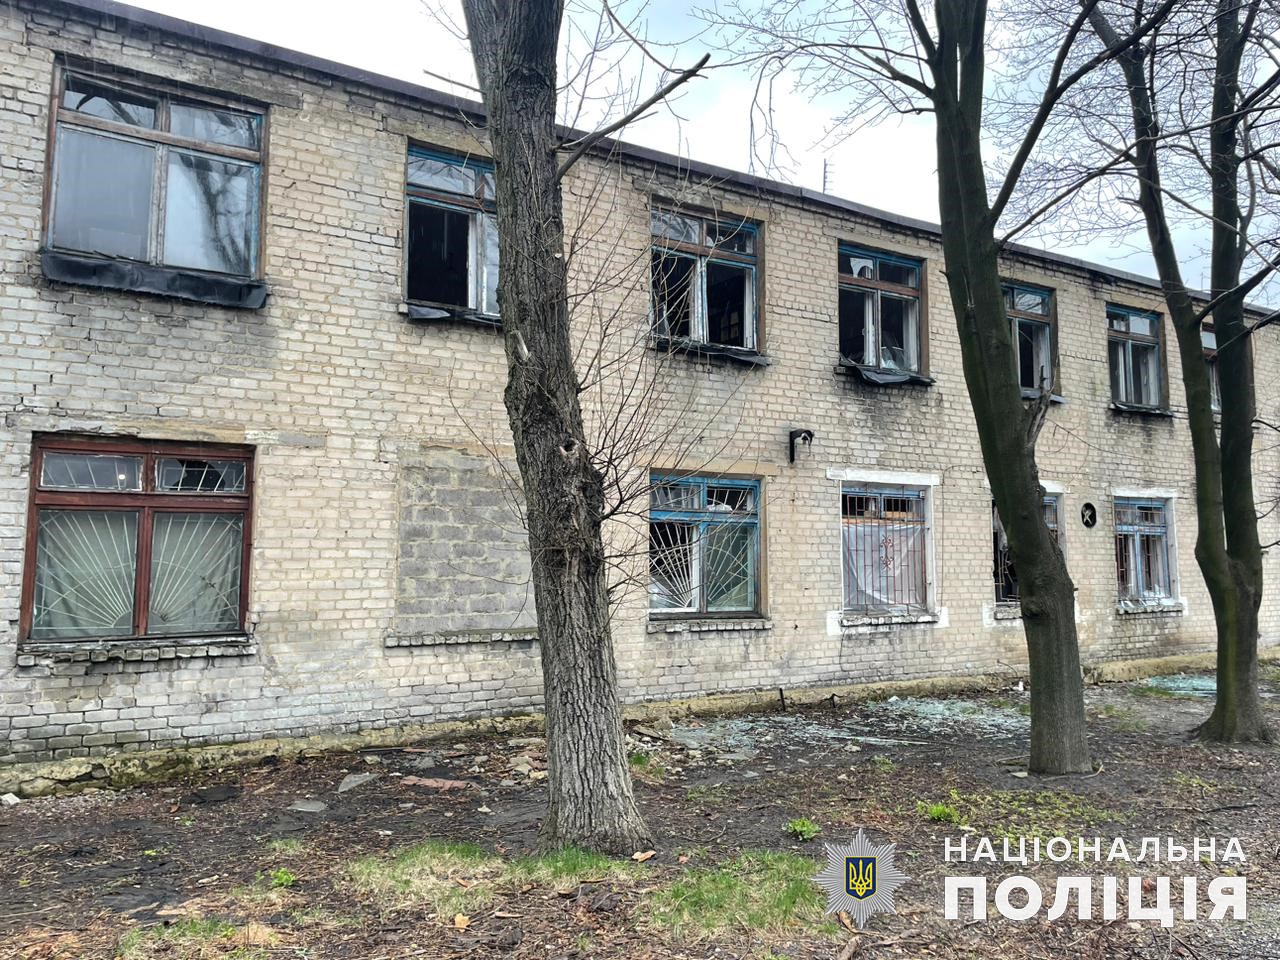 От обстрелов погибли четверо жителей Донетчины: за сутки оккупанты накрыли огнем 37 городов и сел области 2